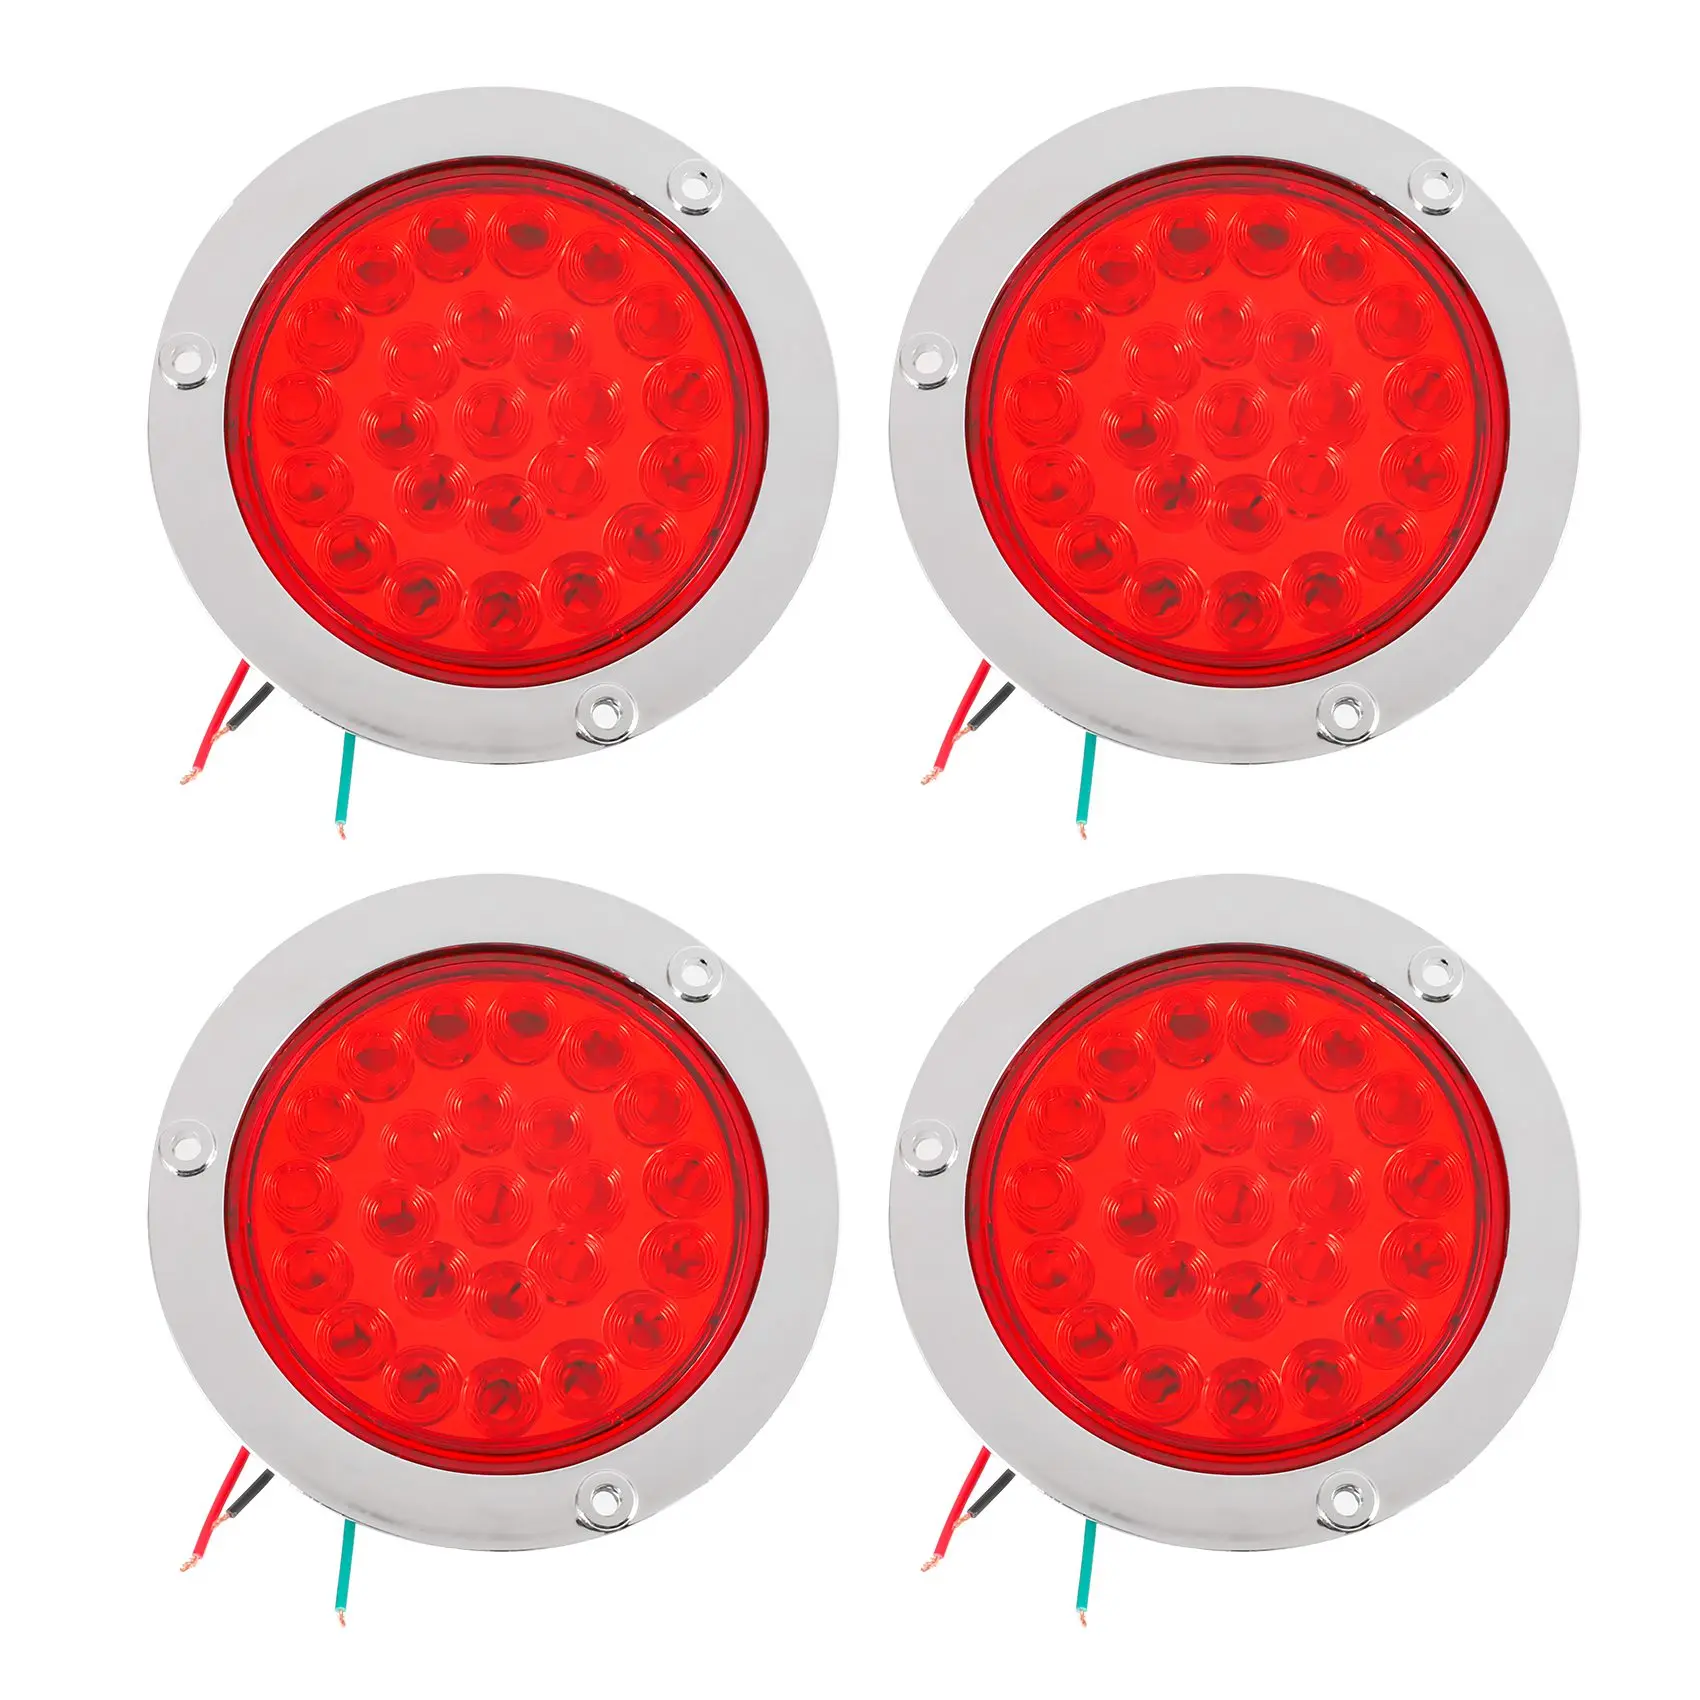 

4 упаковки, круглые светодиодные задние фонари для прицепа, красные, 24 светодиода, фланцевое крепление, водонепроницаемые хромированные 4-дюймовые стоп-сигналы, поворотные фонари